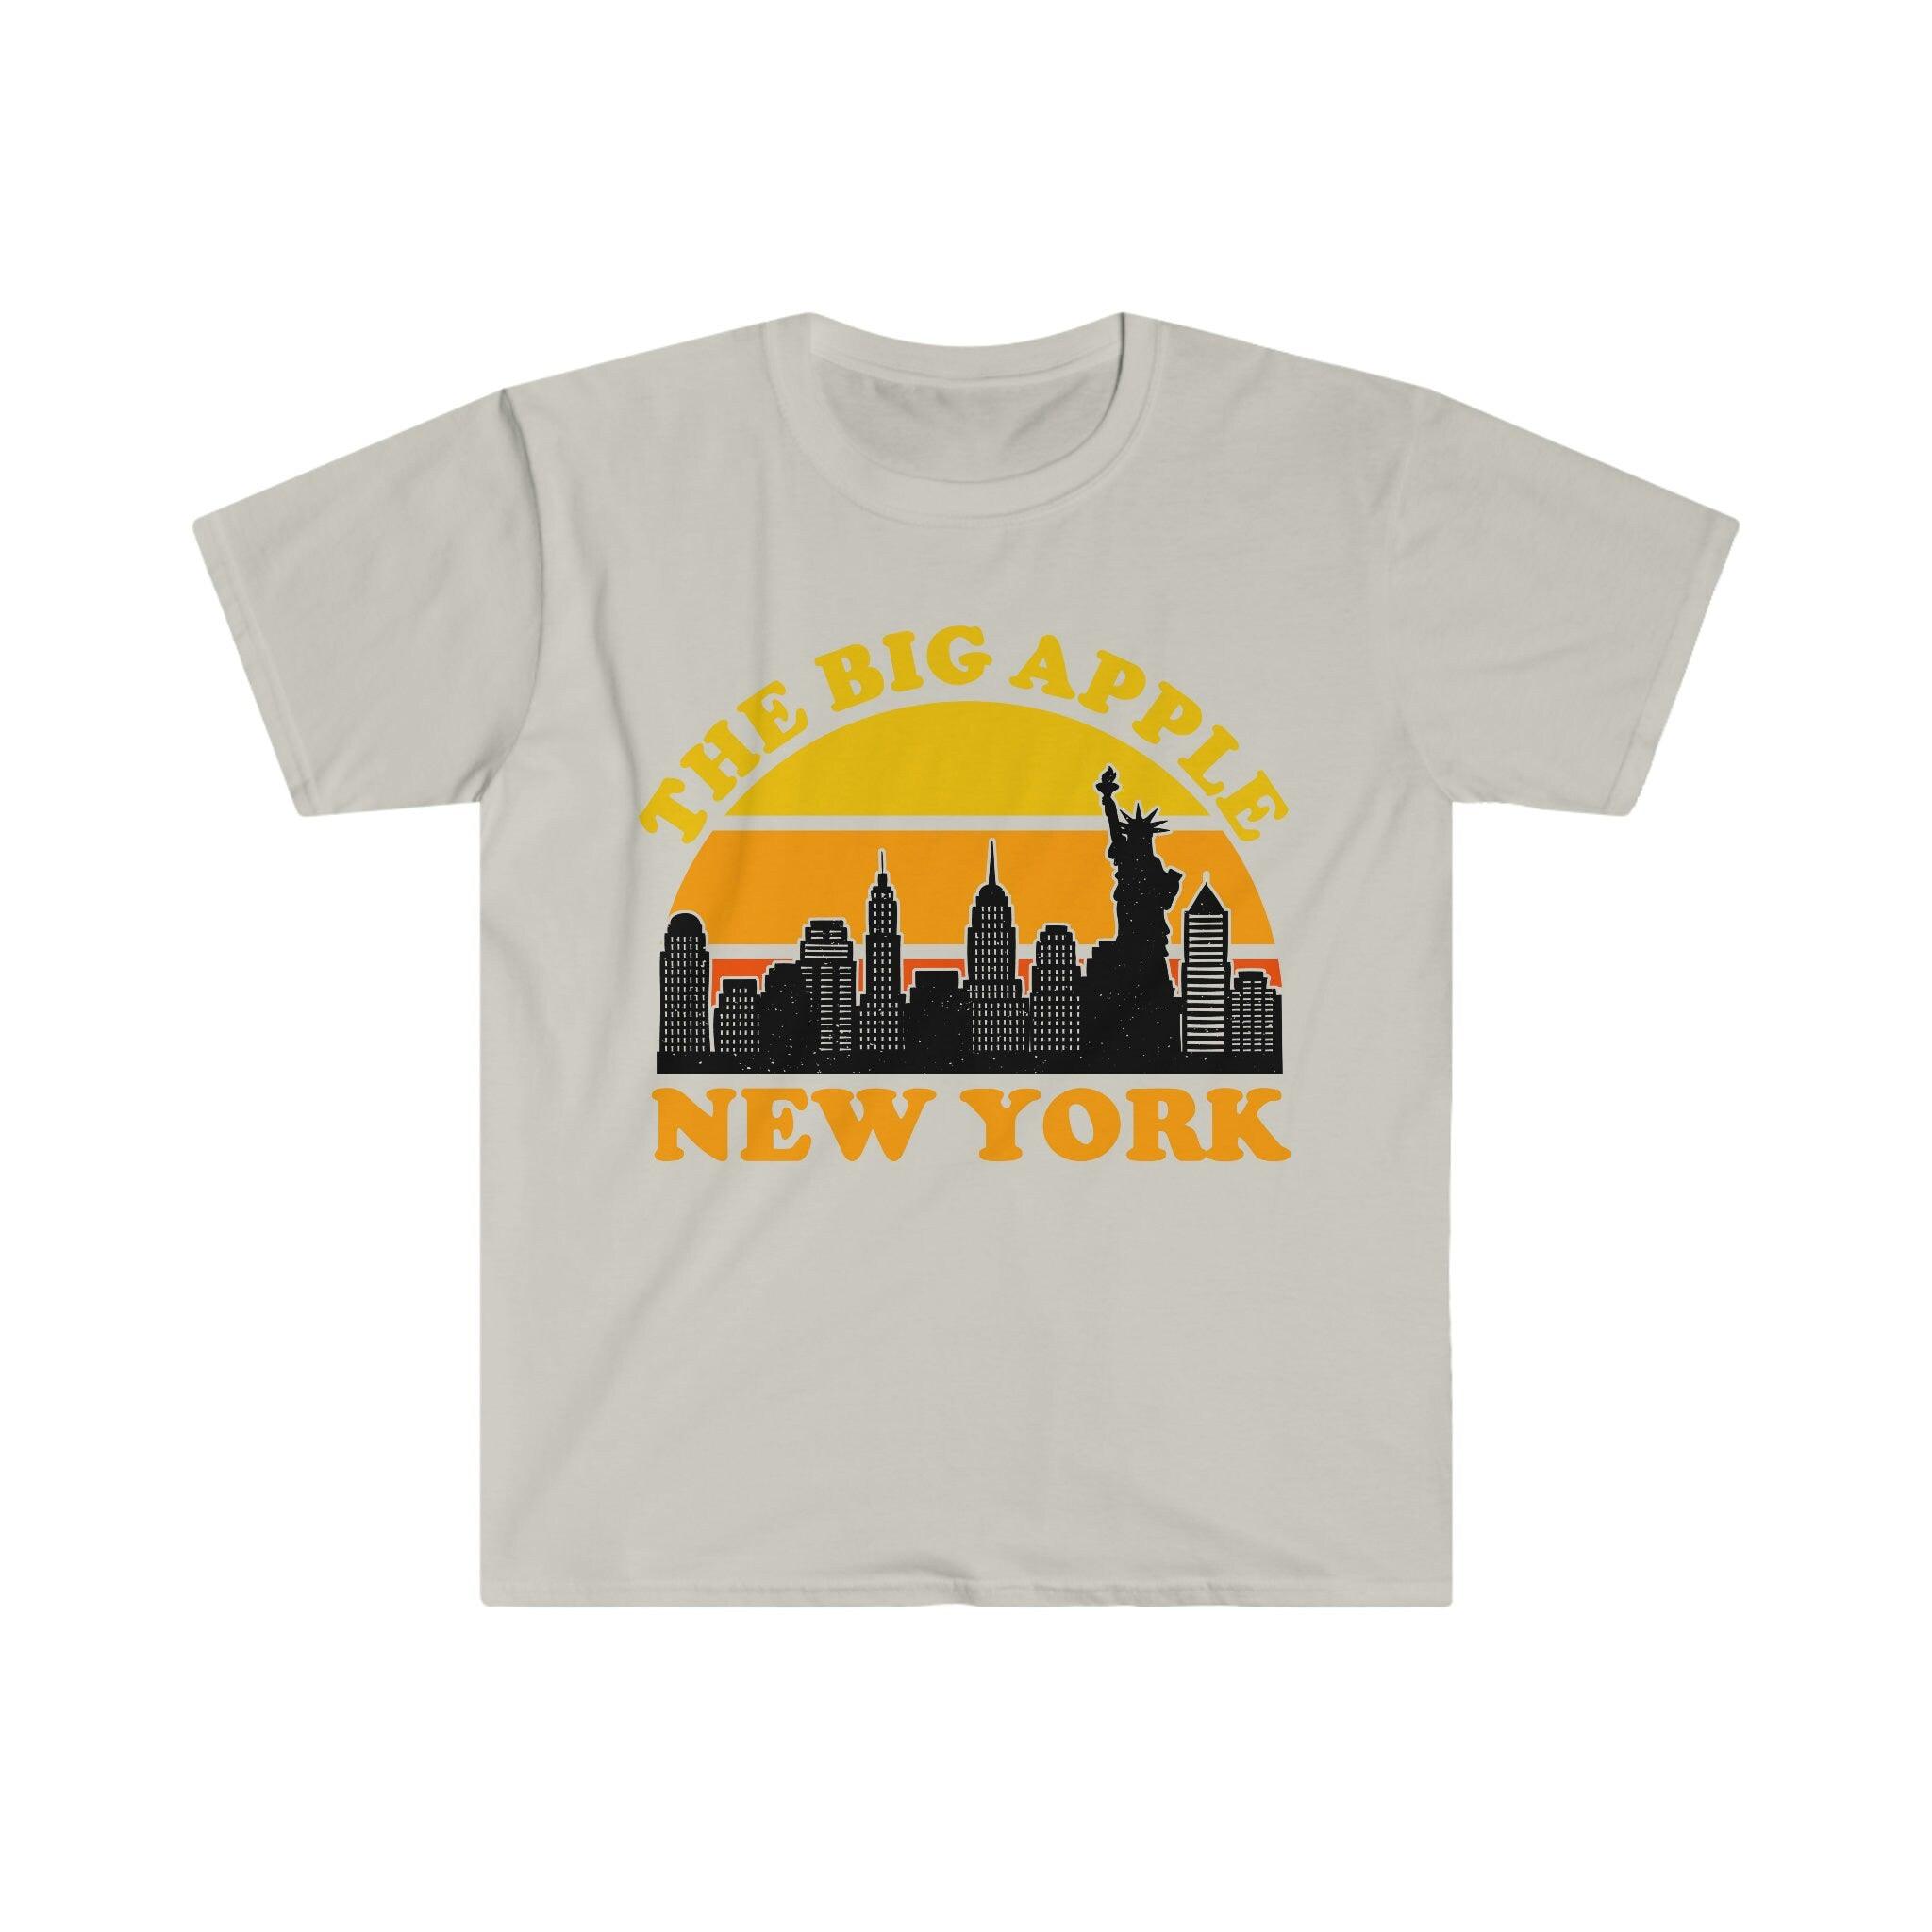 빅 애플 뉴욕 | 레트로 선셋 티셔츠, 뉴욕시 스카이라인 기념품 티셔츠, NYC 파티 의상, Visit Trip Travel NY, 브루클린 브리지, 시티 스카이라인, 맨해튼, 뉴욕, 뉴욕시, 뉴욕시 예술, 뉴욕 선물, 뉴욕 프린트, 뉴욕 스카이라인, 뉴욕, 뉴욕 선물, 뉴욕 스카이라인, 자유의 여신상, 티, 티셔츠 - plusminusco.com